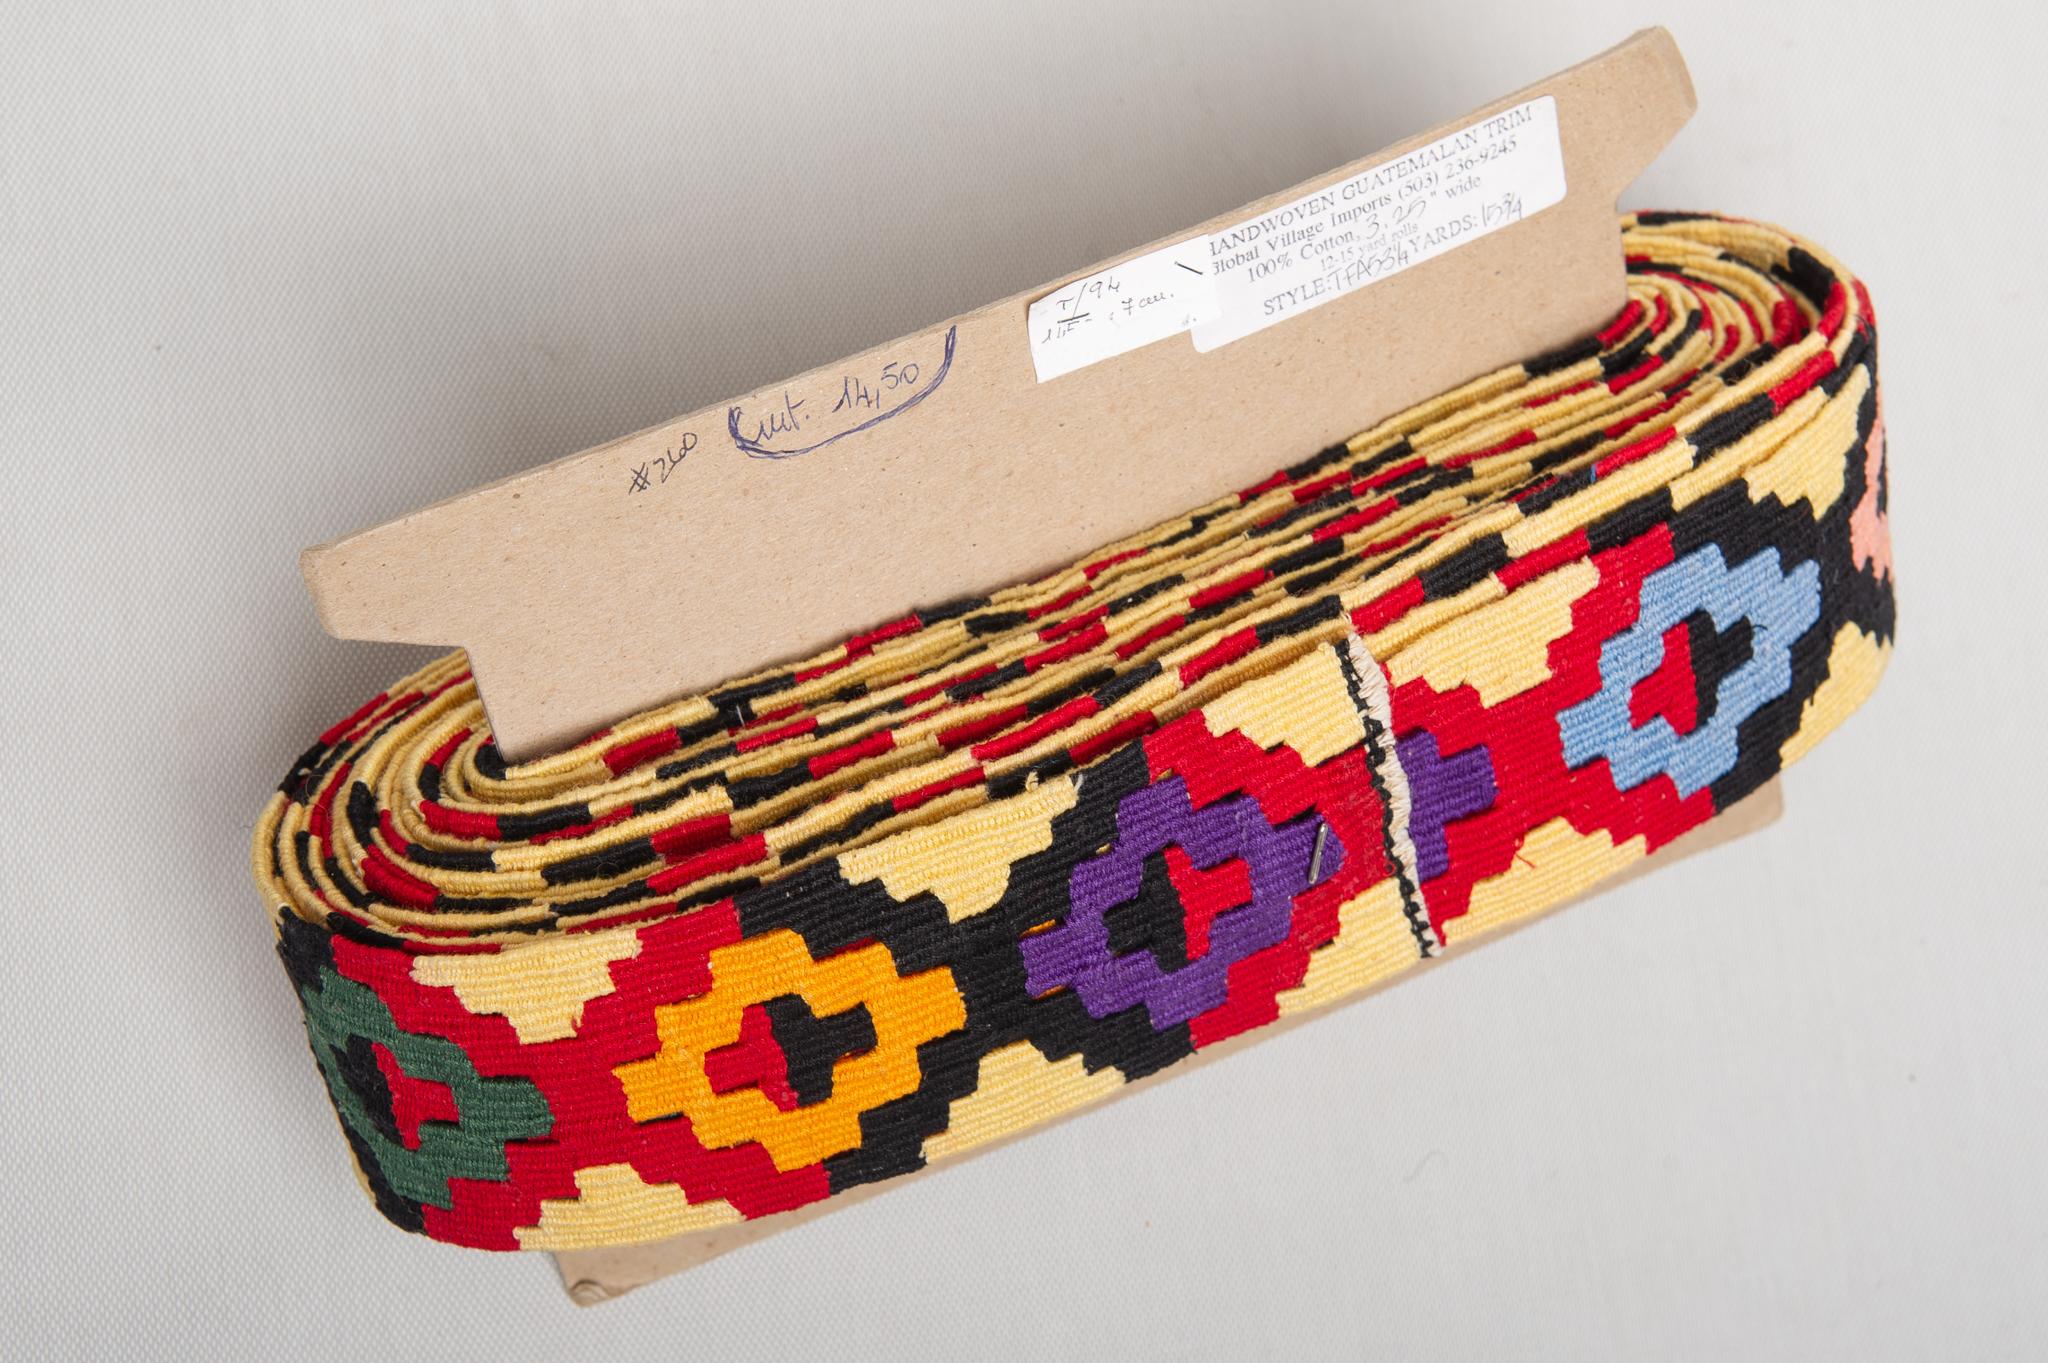 Seltene polychrome Kelim-Bordüre aus Guatemala, komplett auf dem Webstuhl handgefertigt.
Es ist interessant für ...etwas in Ihrem Haus: um eine Decke oder... sagen Sie mir Ihre Ideen.